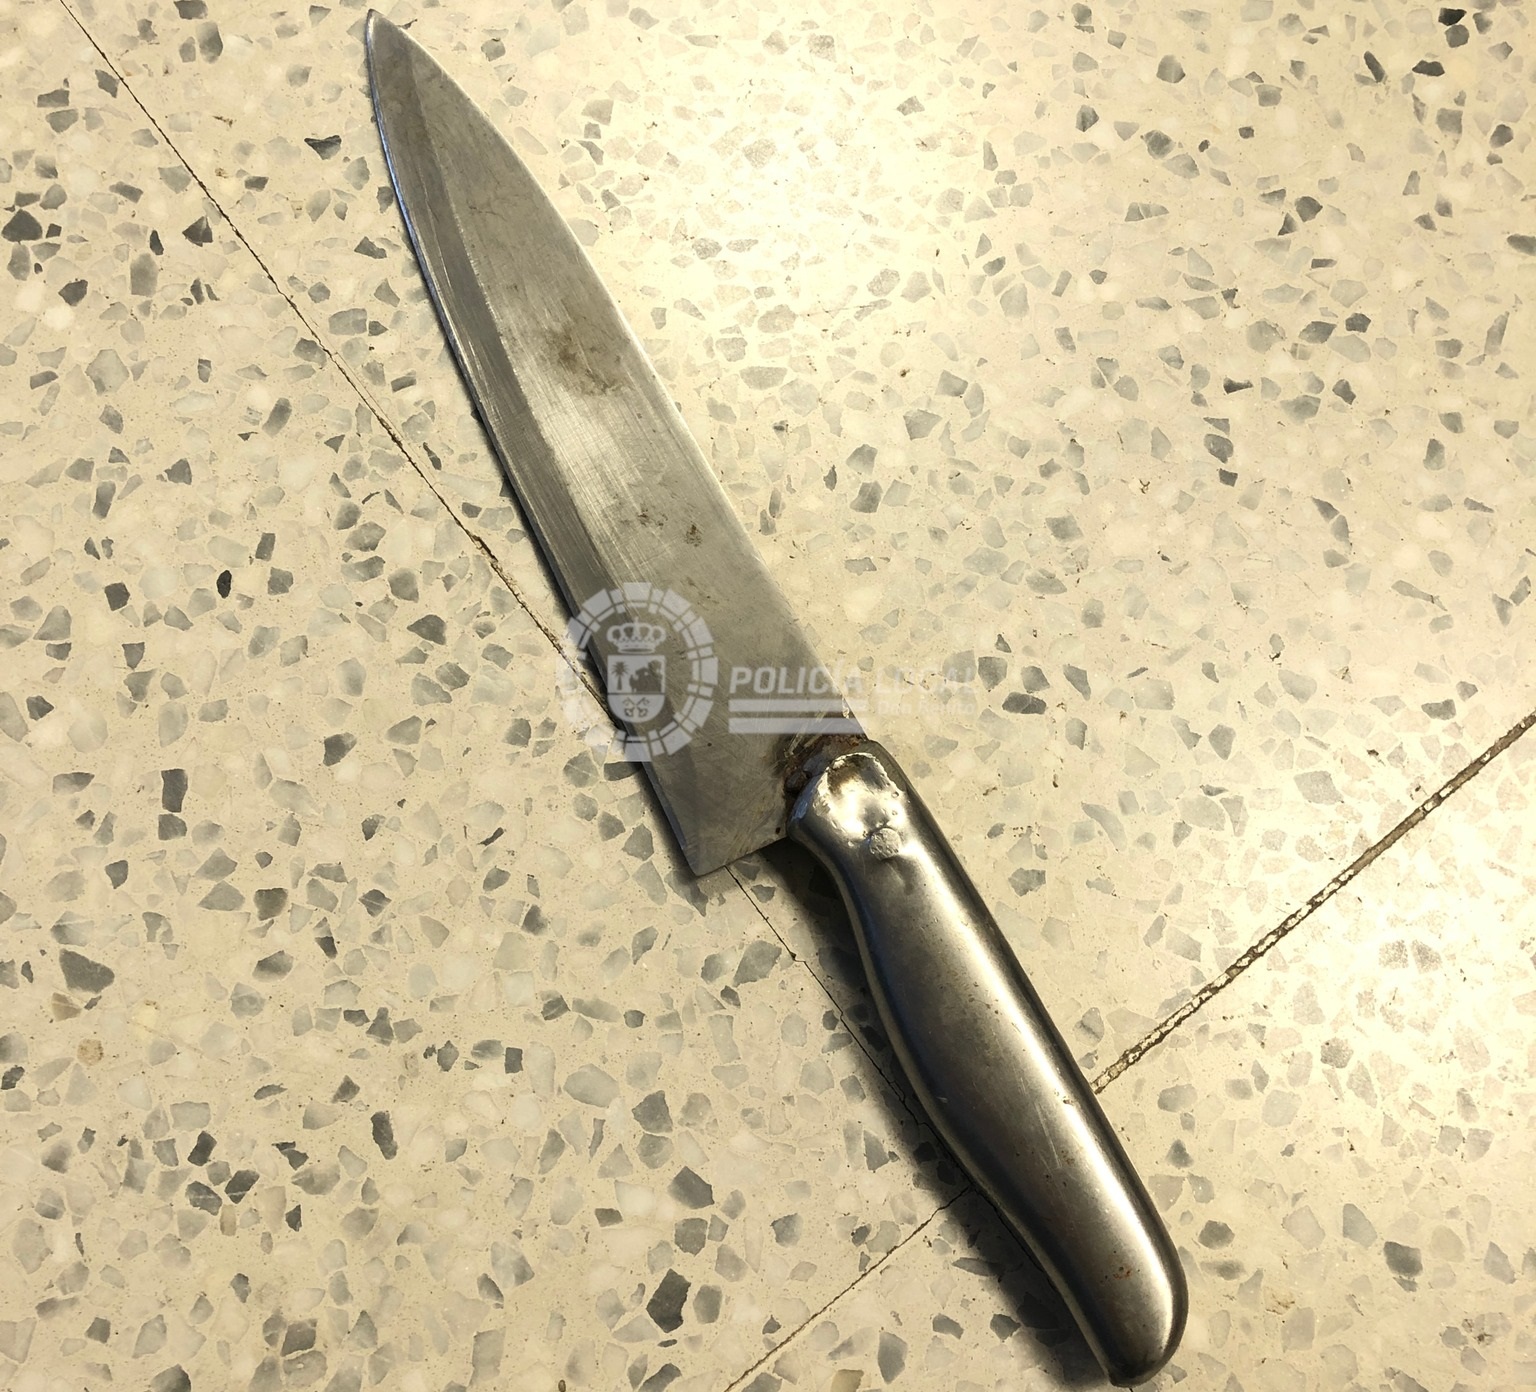 pOLICA lOCAL cuchillo